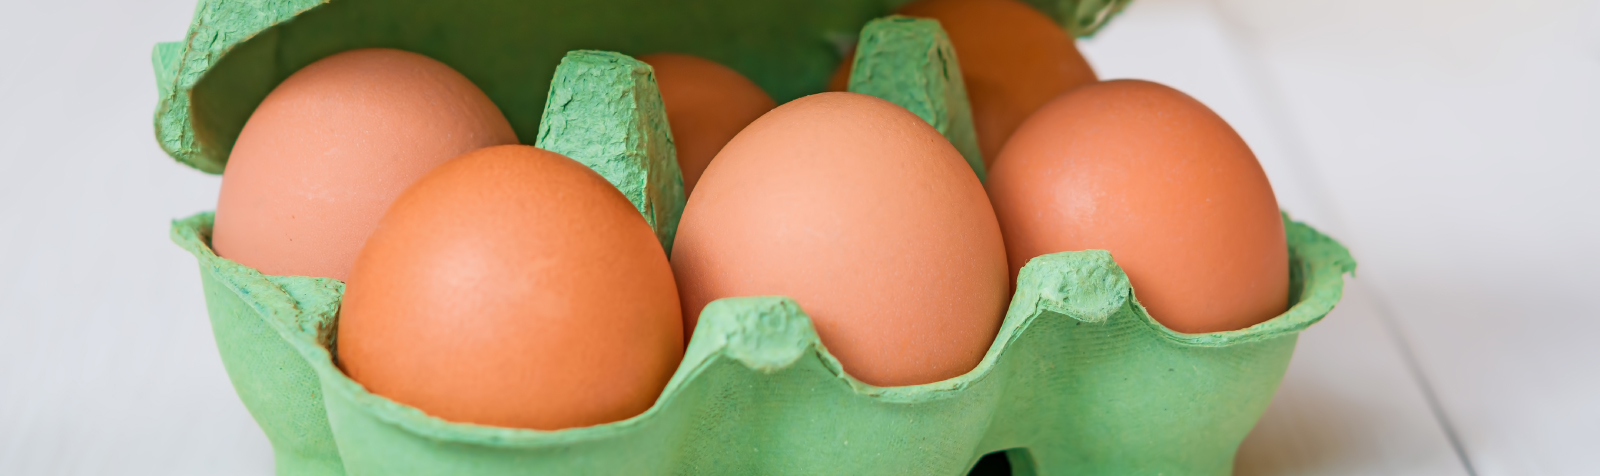 Como saber se o ovo está estragado?